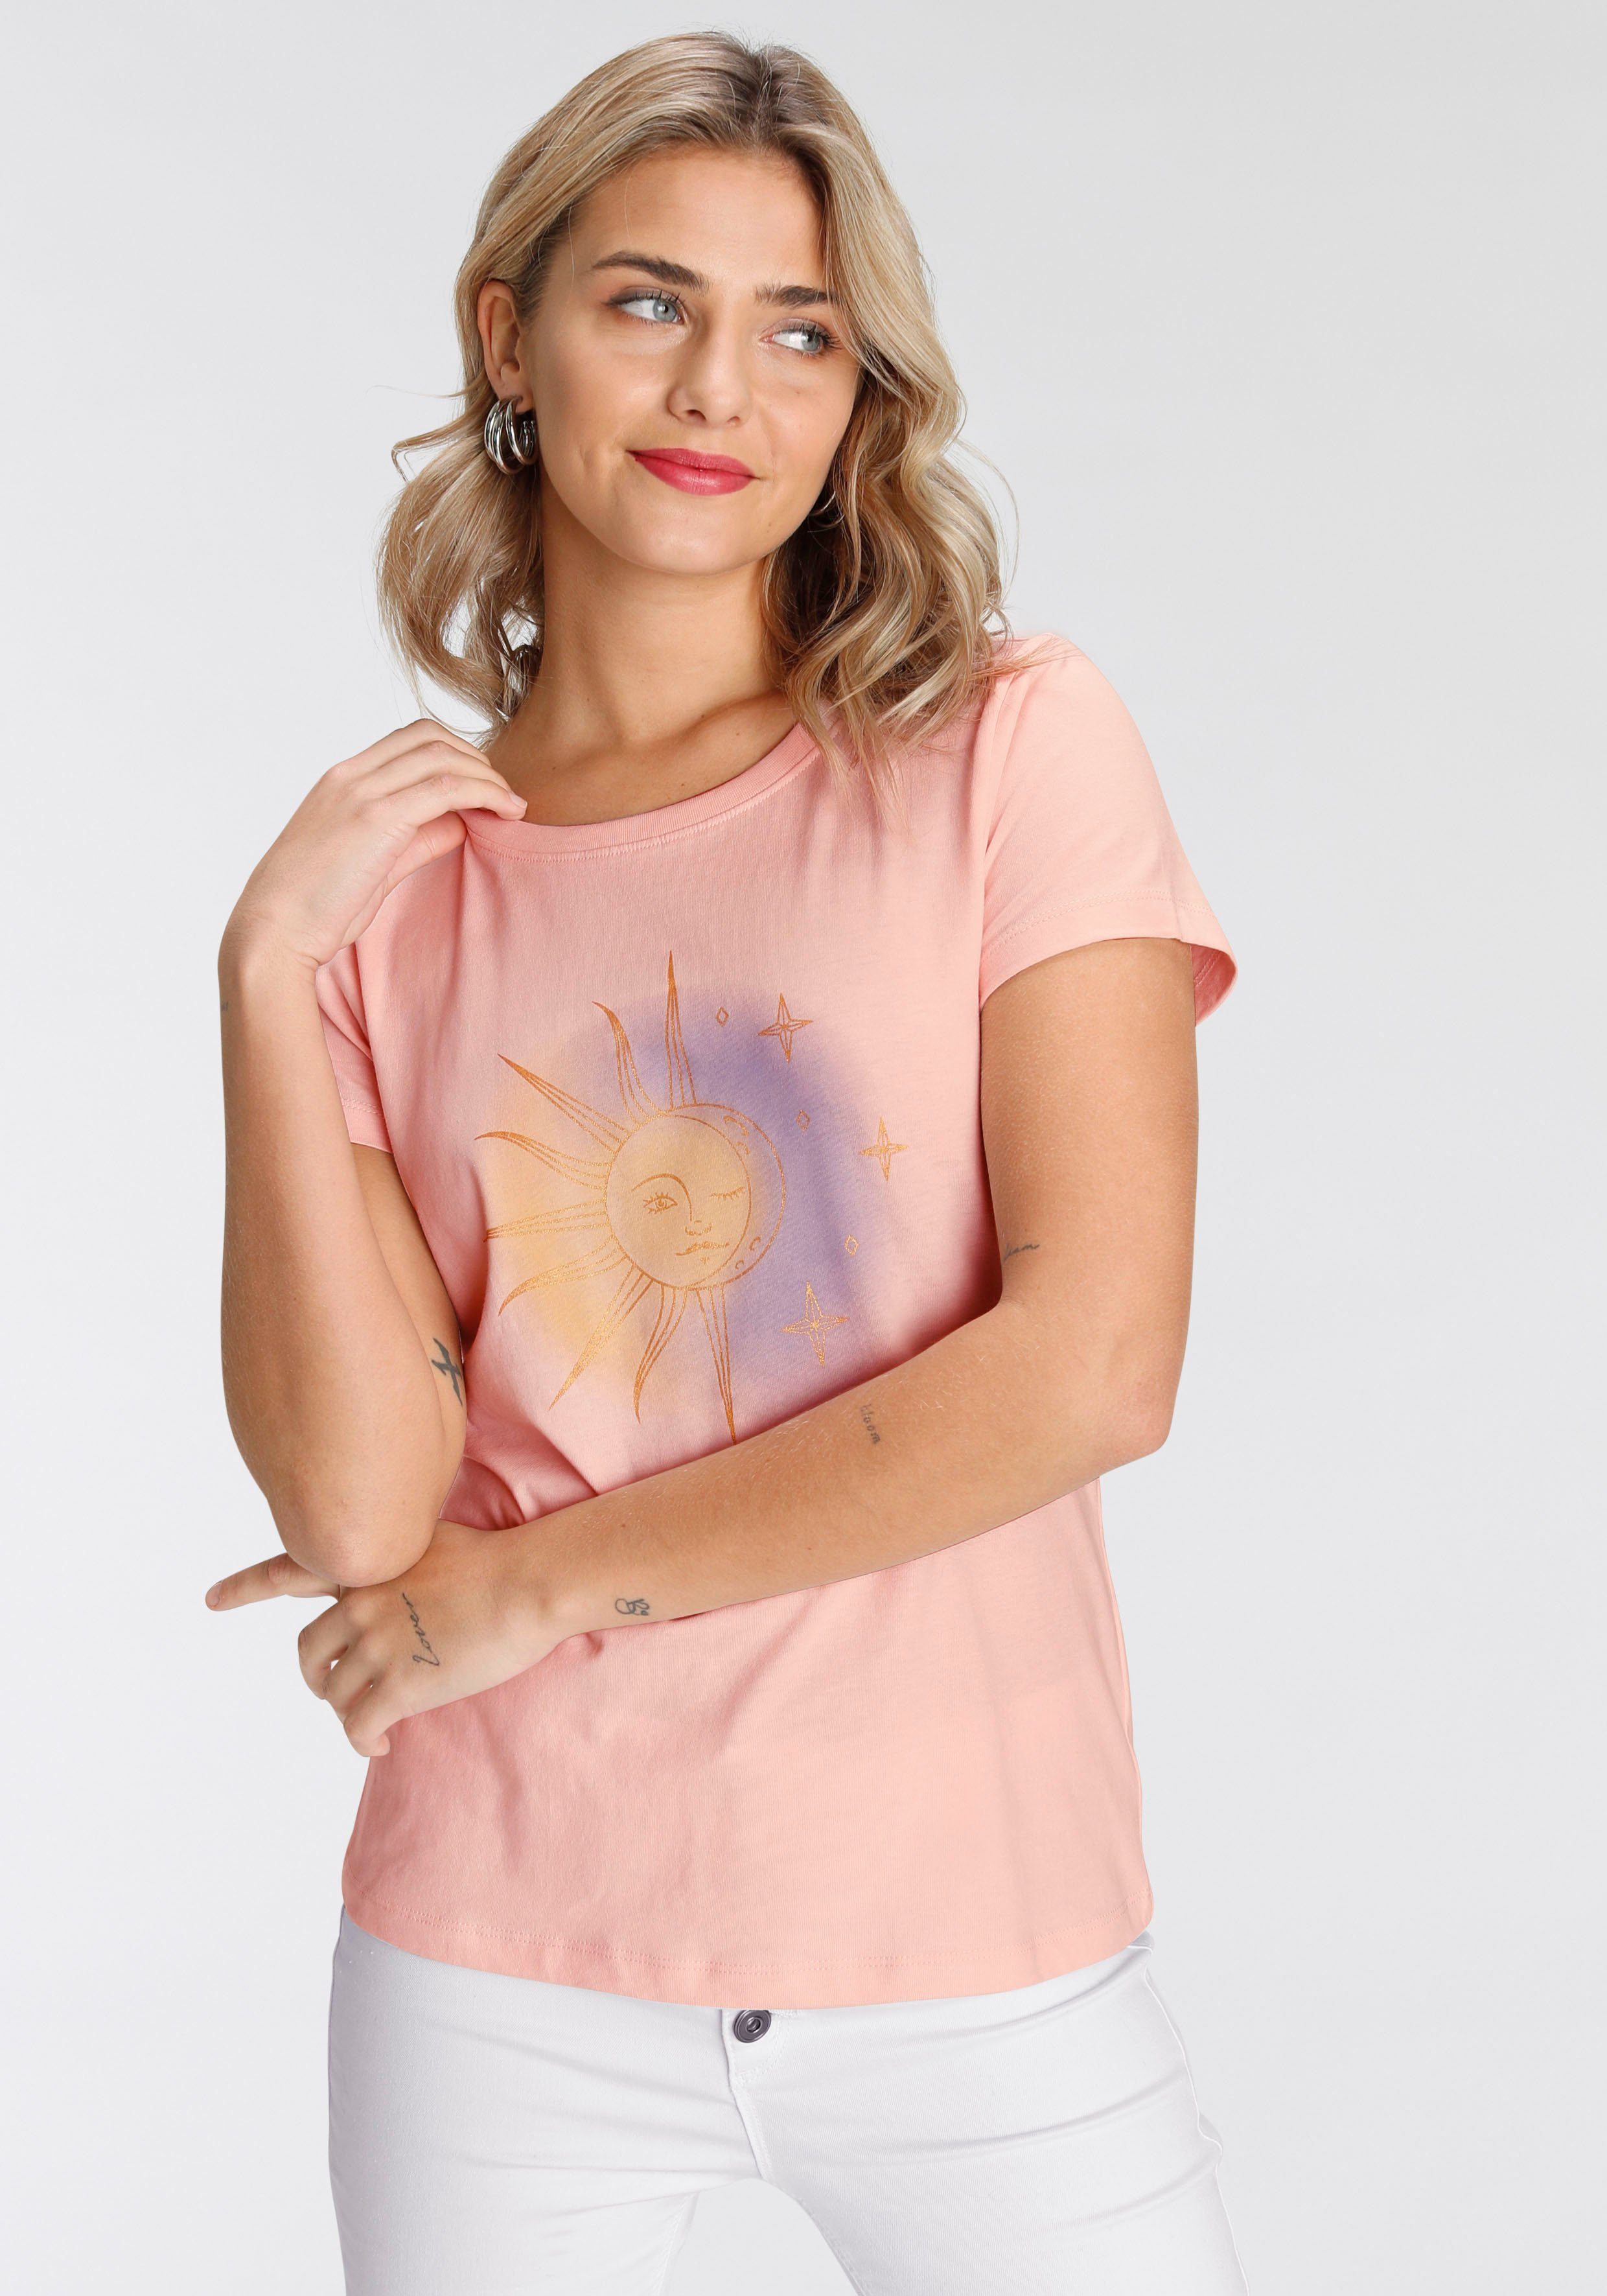 modischen Designs Print-Shirt in verschiedenen rosa AJC